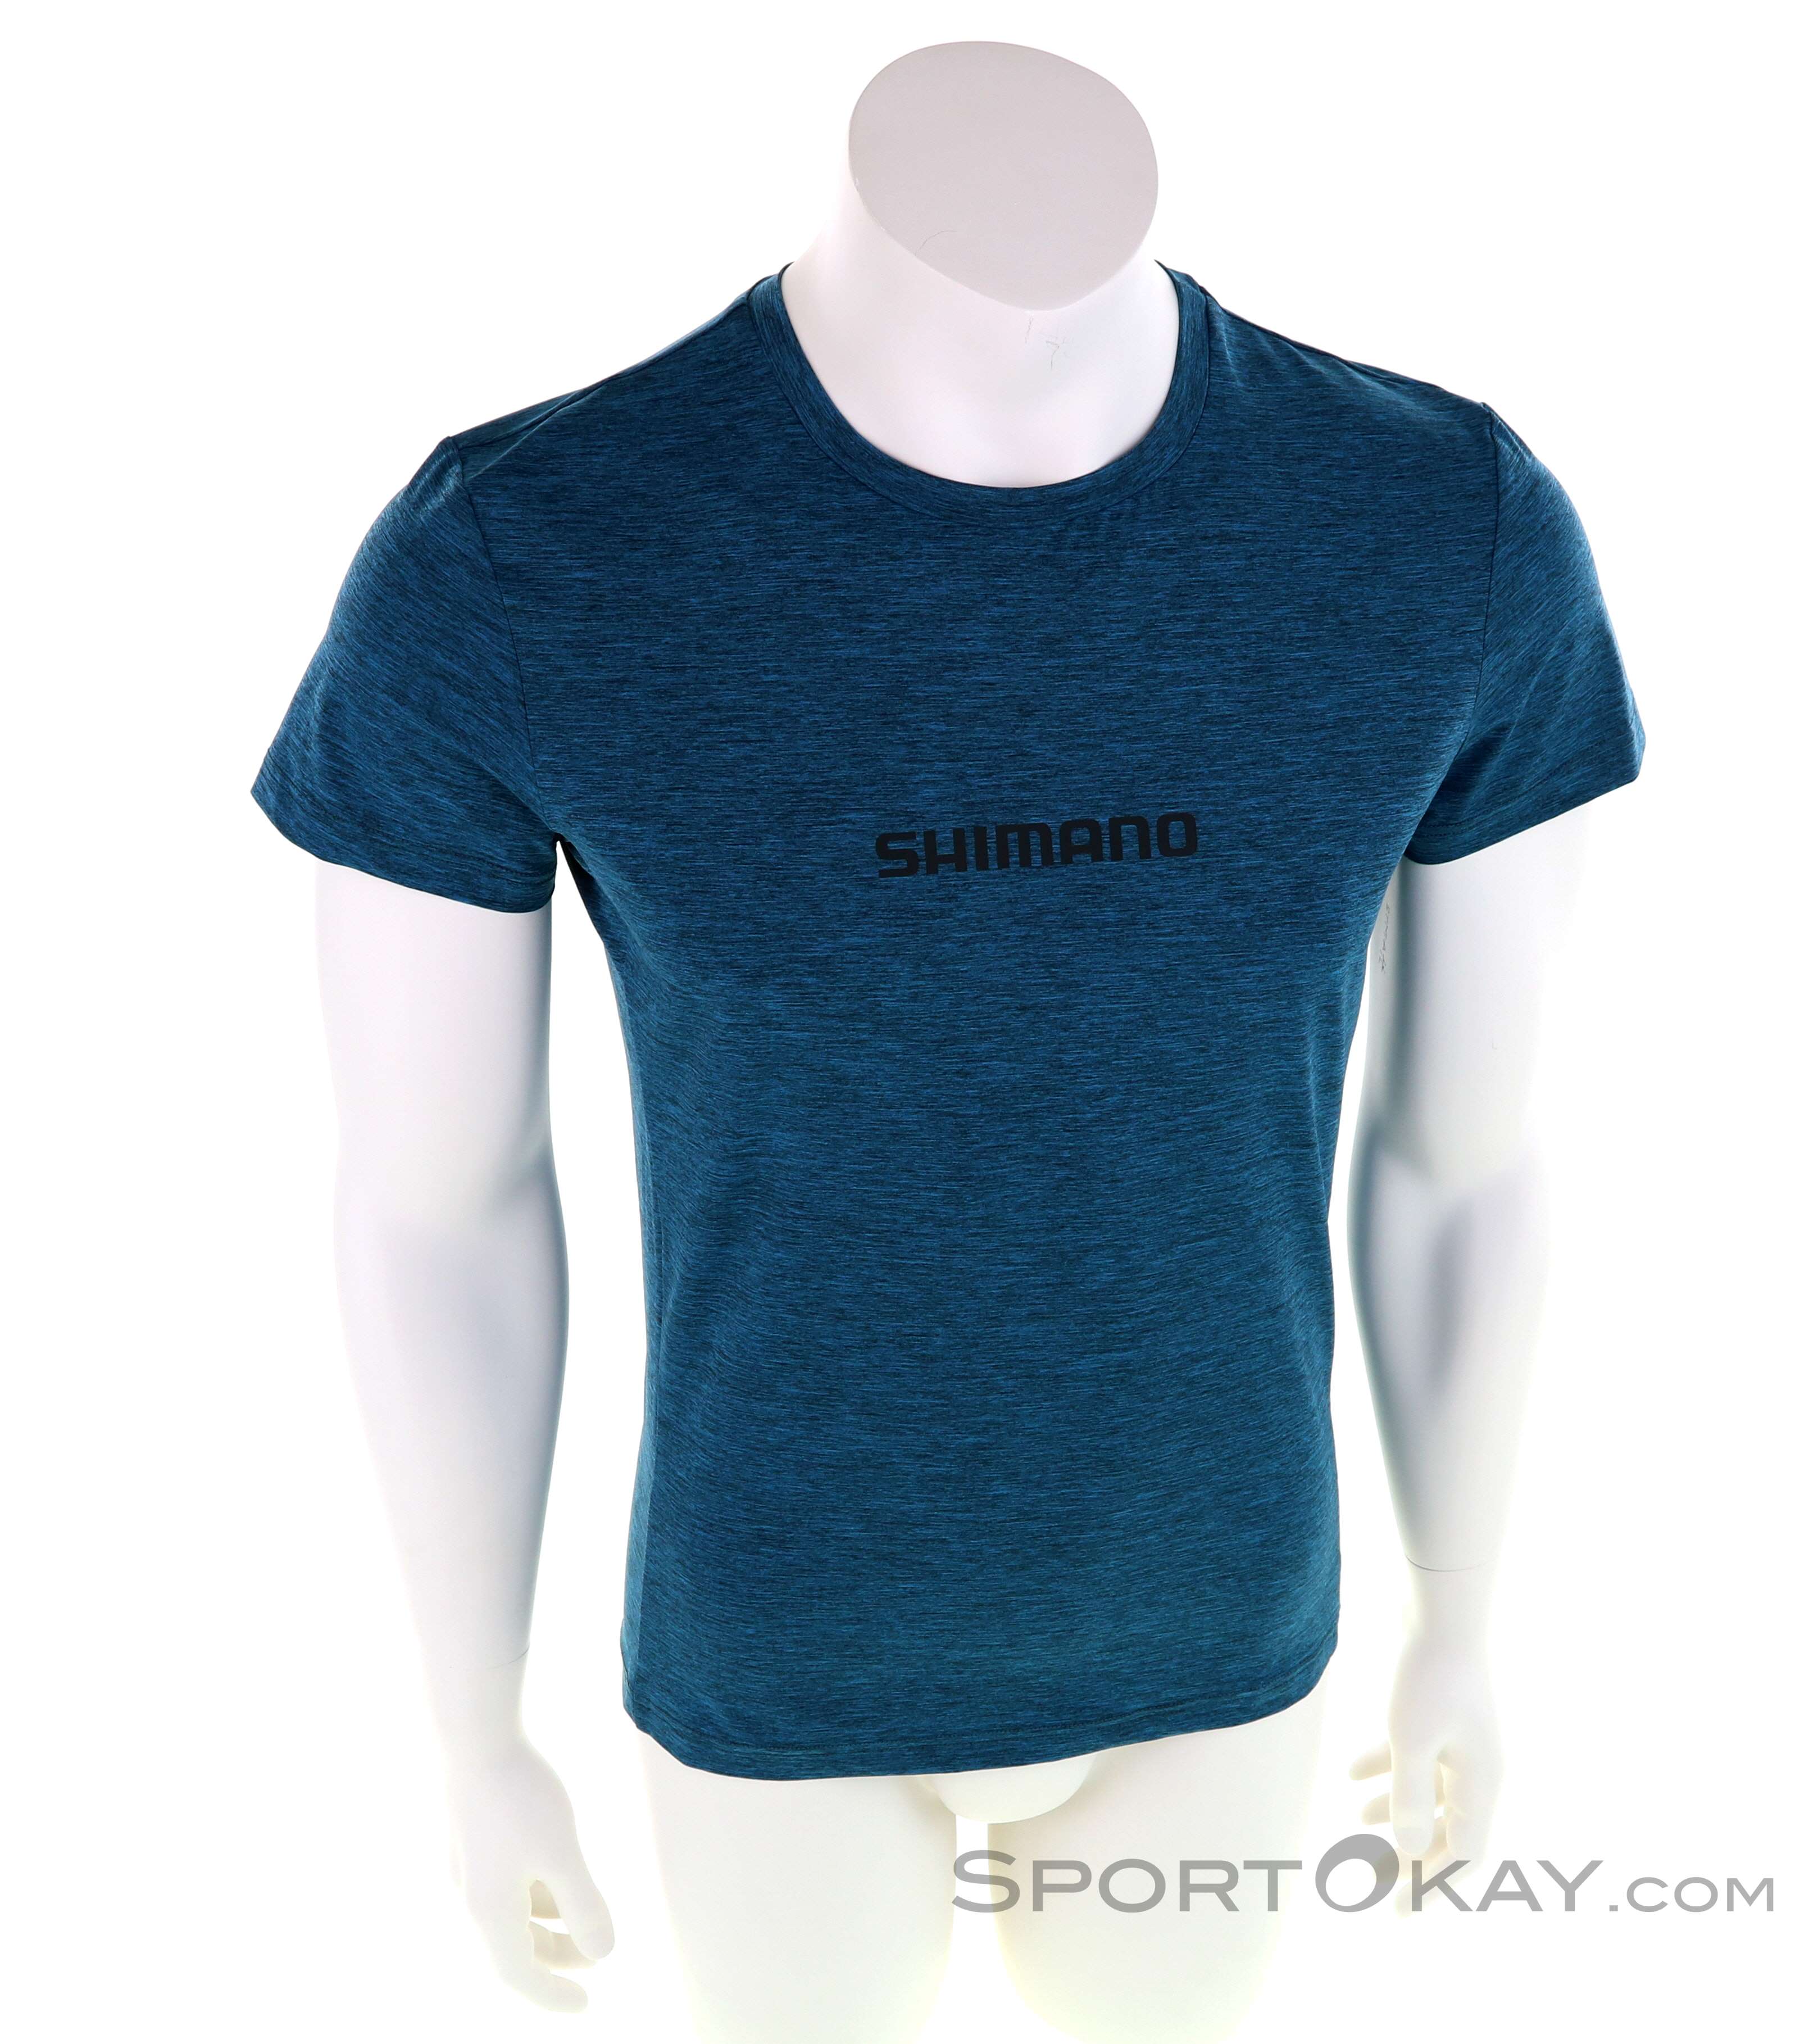 Shimano fishing Aero Short Sleeve T-Shirt Black